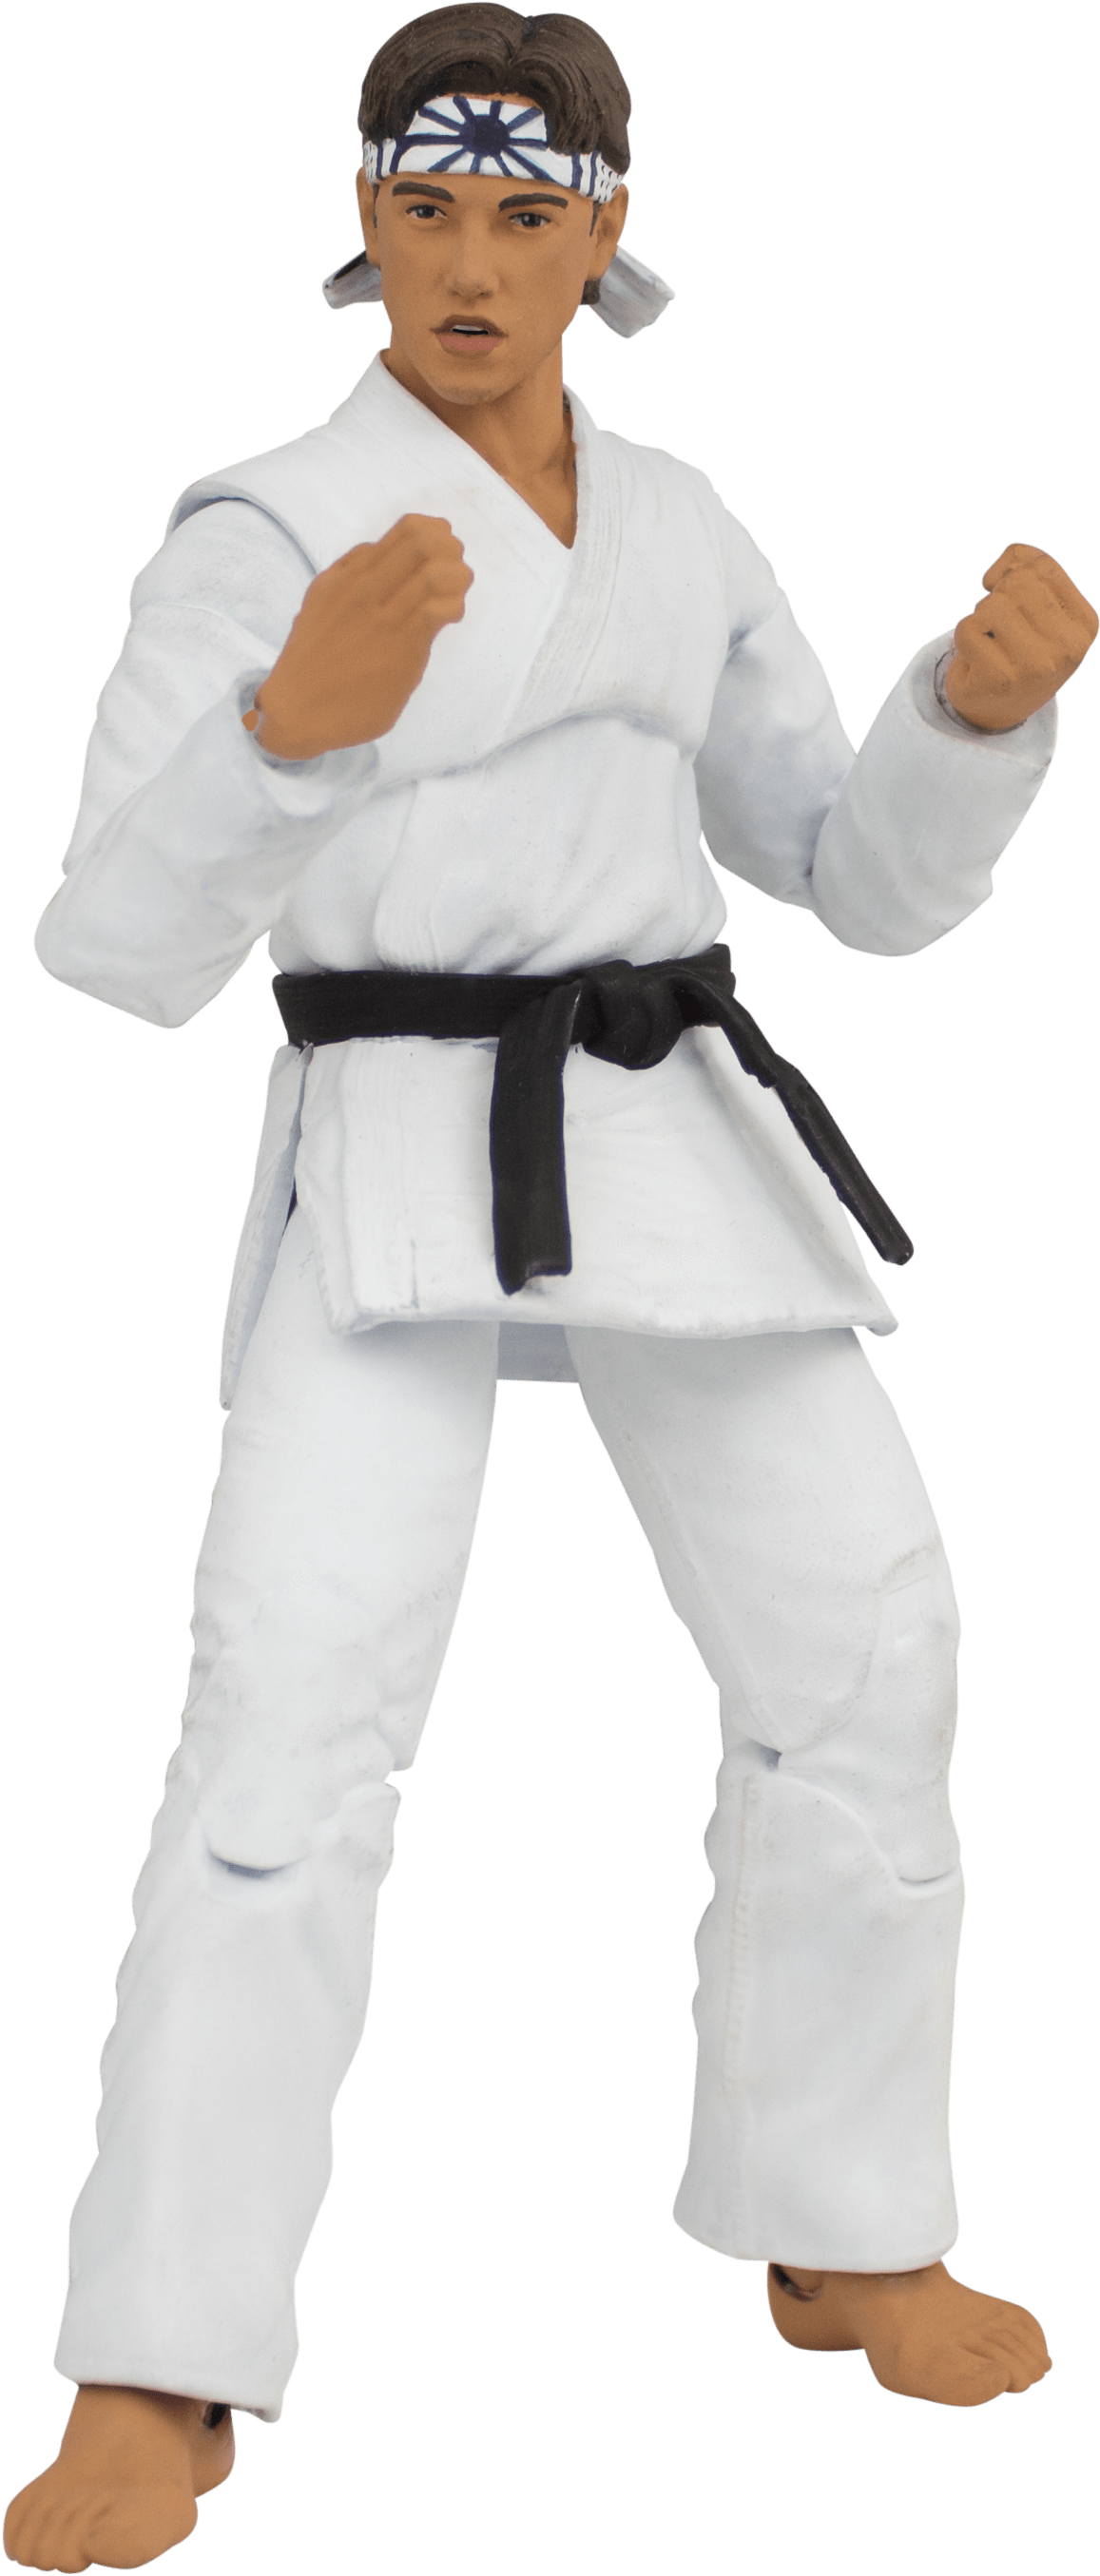 The Karate Kid Daniel Larusso Action Figure - Brazilian Jiu-jitsu (3009x3009), Png Download